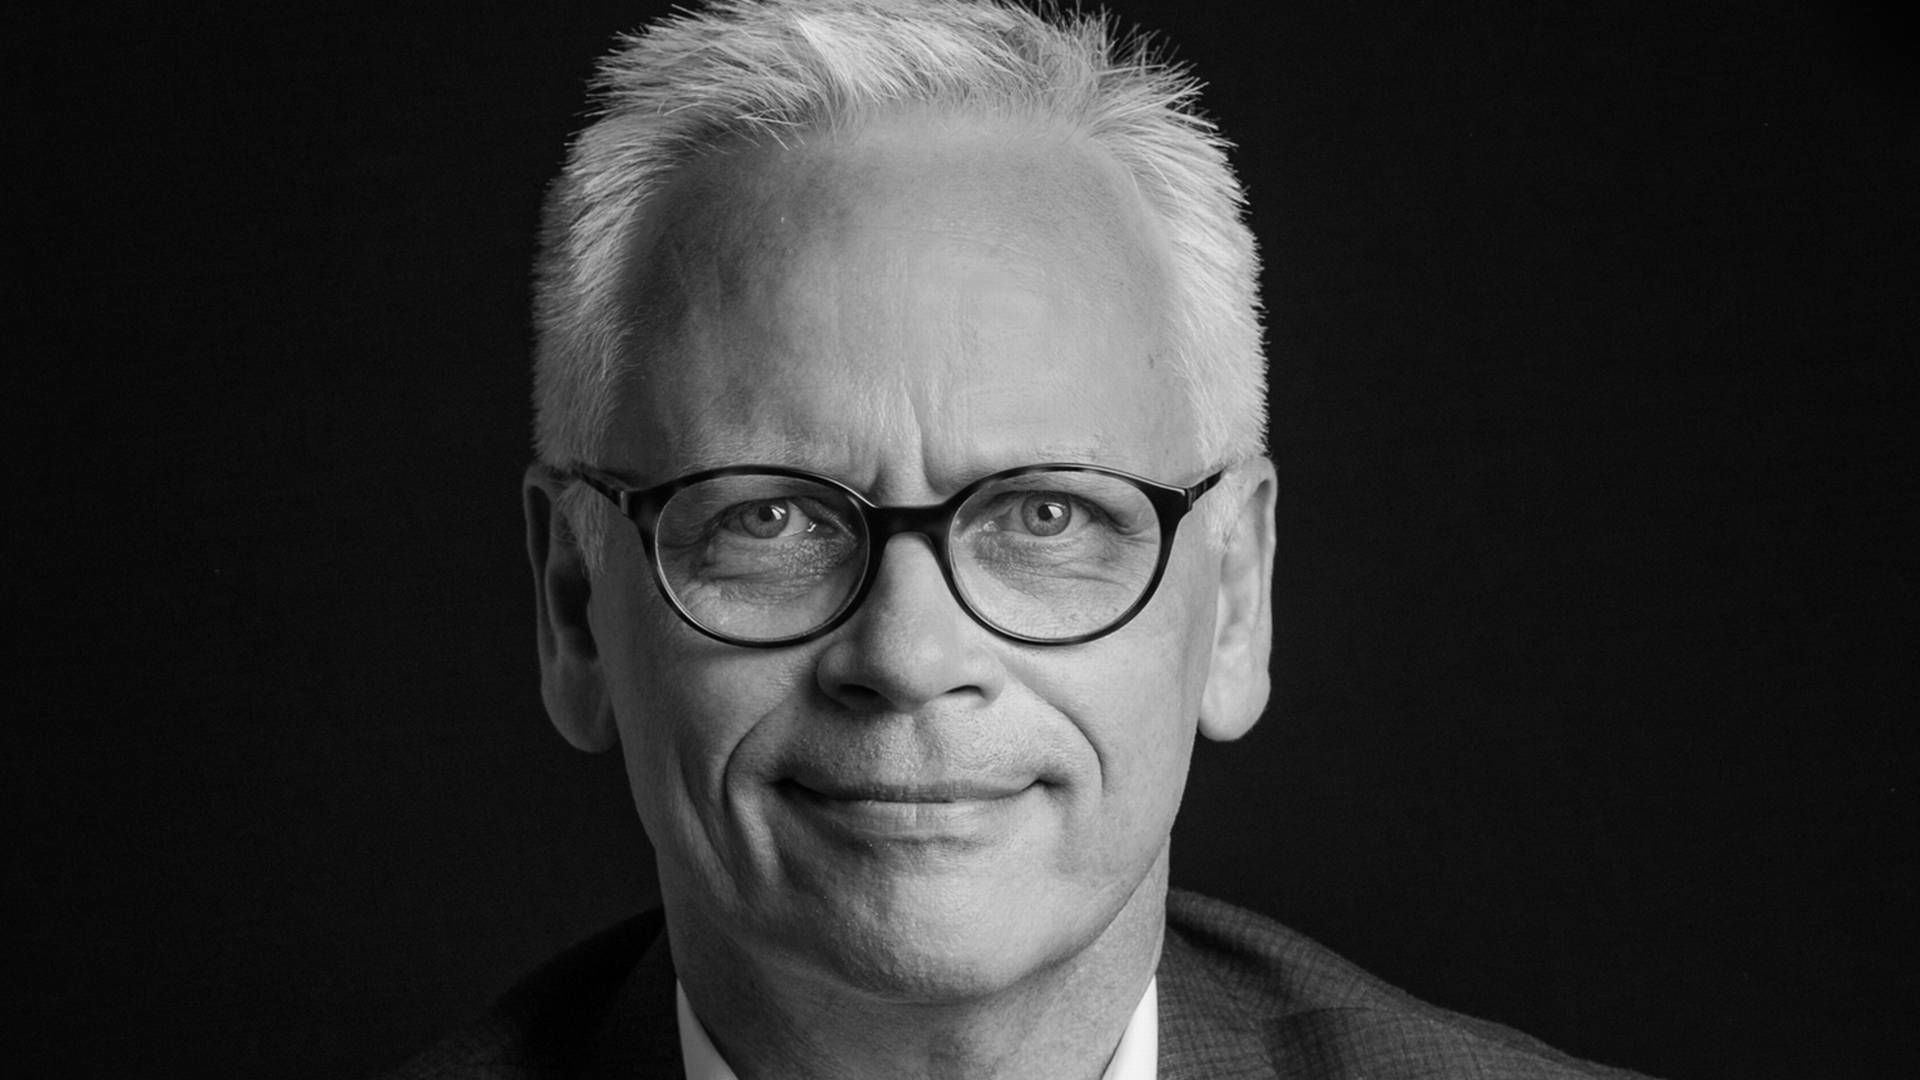 Jan Lundgren har siden starten i 2008 været adm. direktør for indkøbsorganisationen Coop Trading, der blandt andet handler ind til Coops private label-brands i Norden.